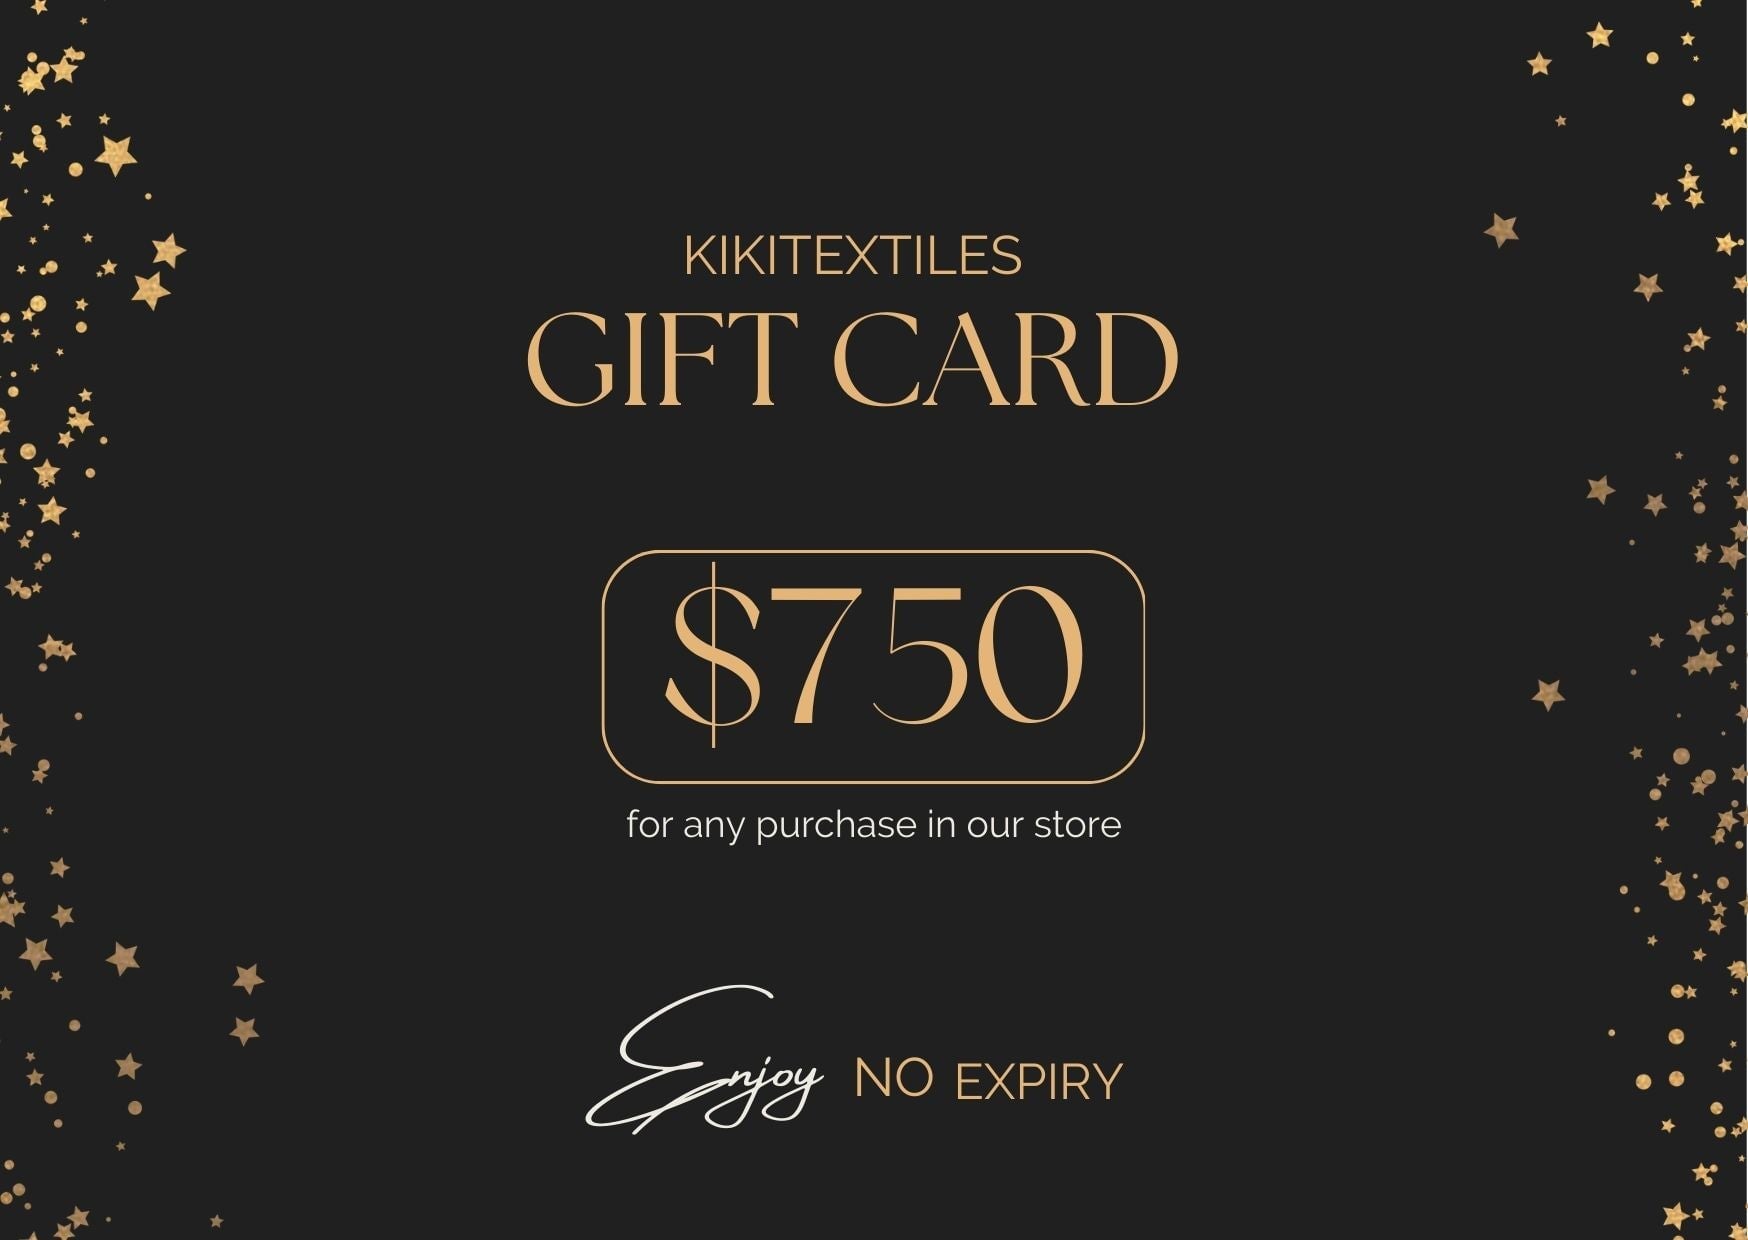 KIKITextiles Gift Card